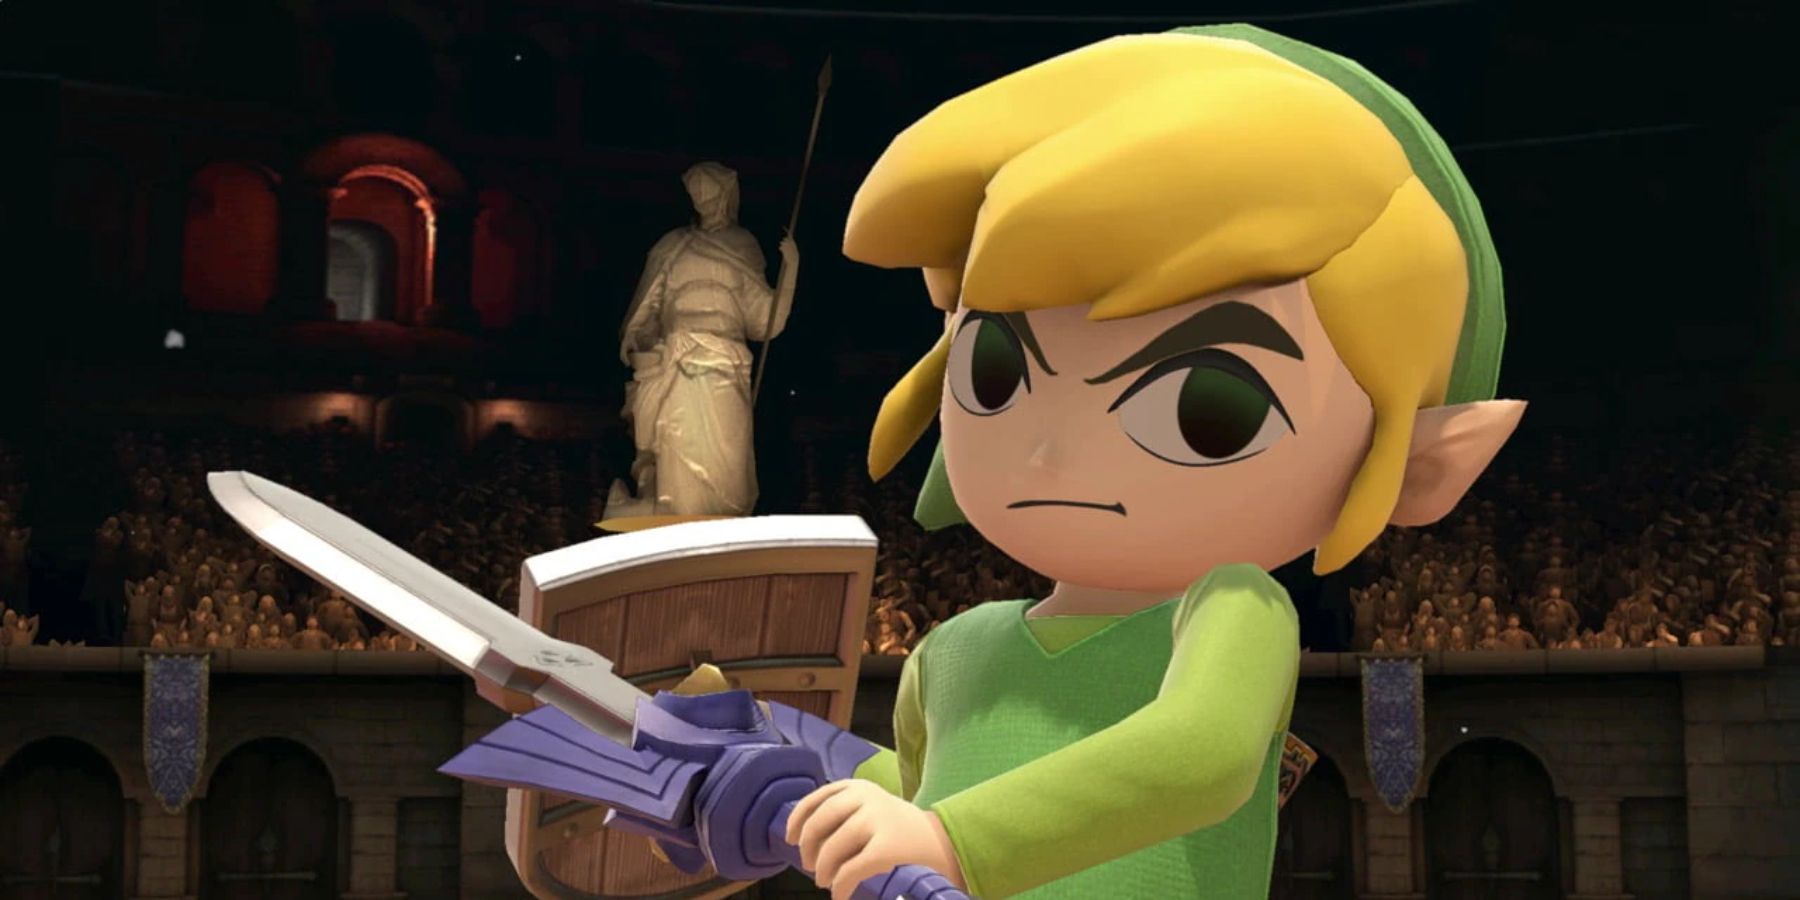 Super Smash Bros Every Legend Of Zelda Fighter Ranked